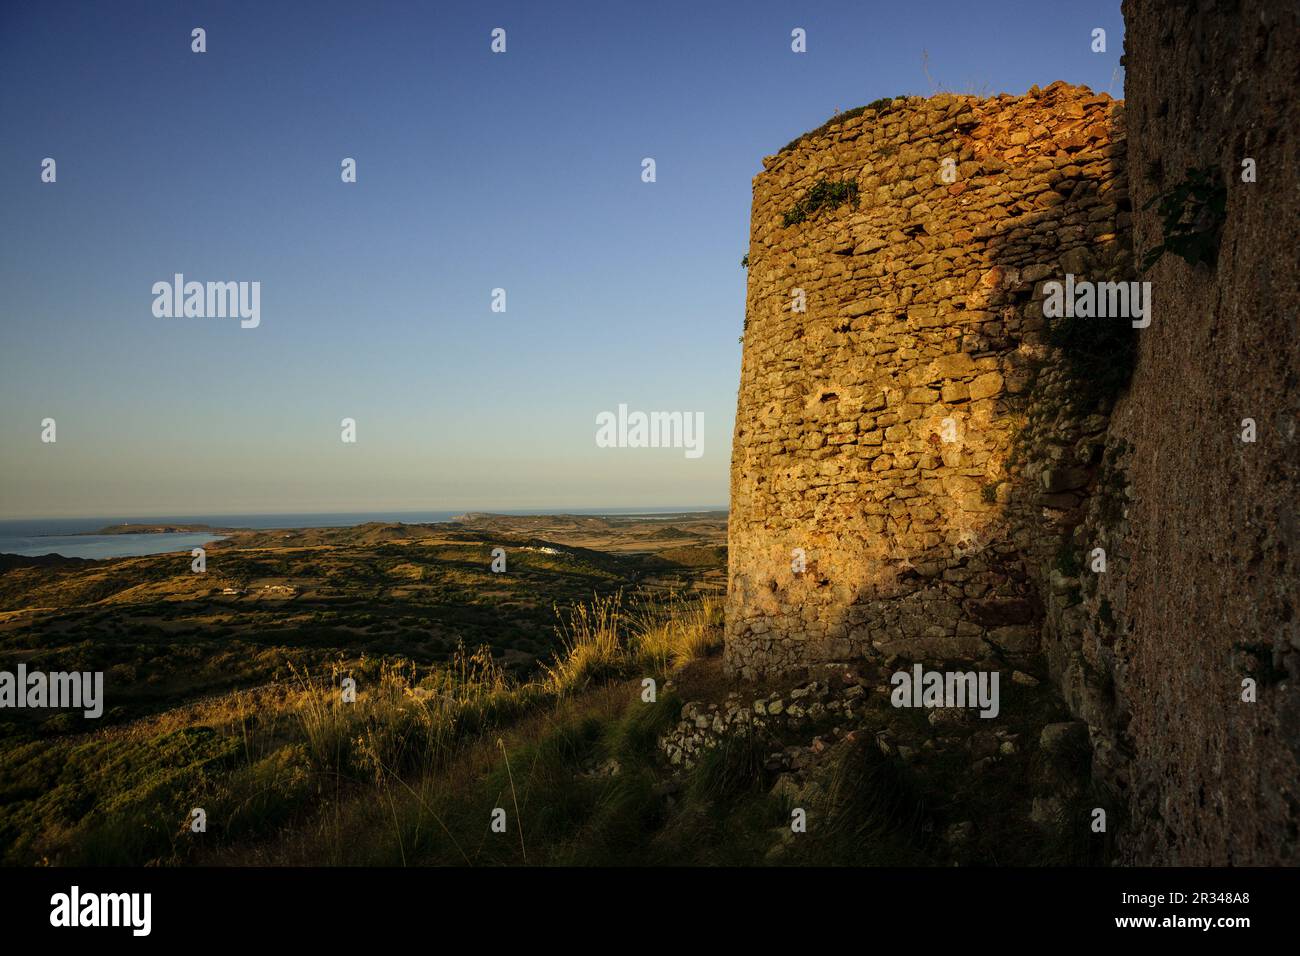 Castillo de Santa Águeda - Sent Agaiz- , antes de 1232, término municipal de Ferrerías, Menorca, Islas Baleares, españa, europa. Stock Photo